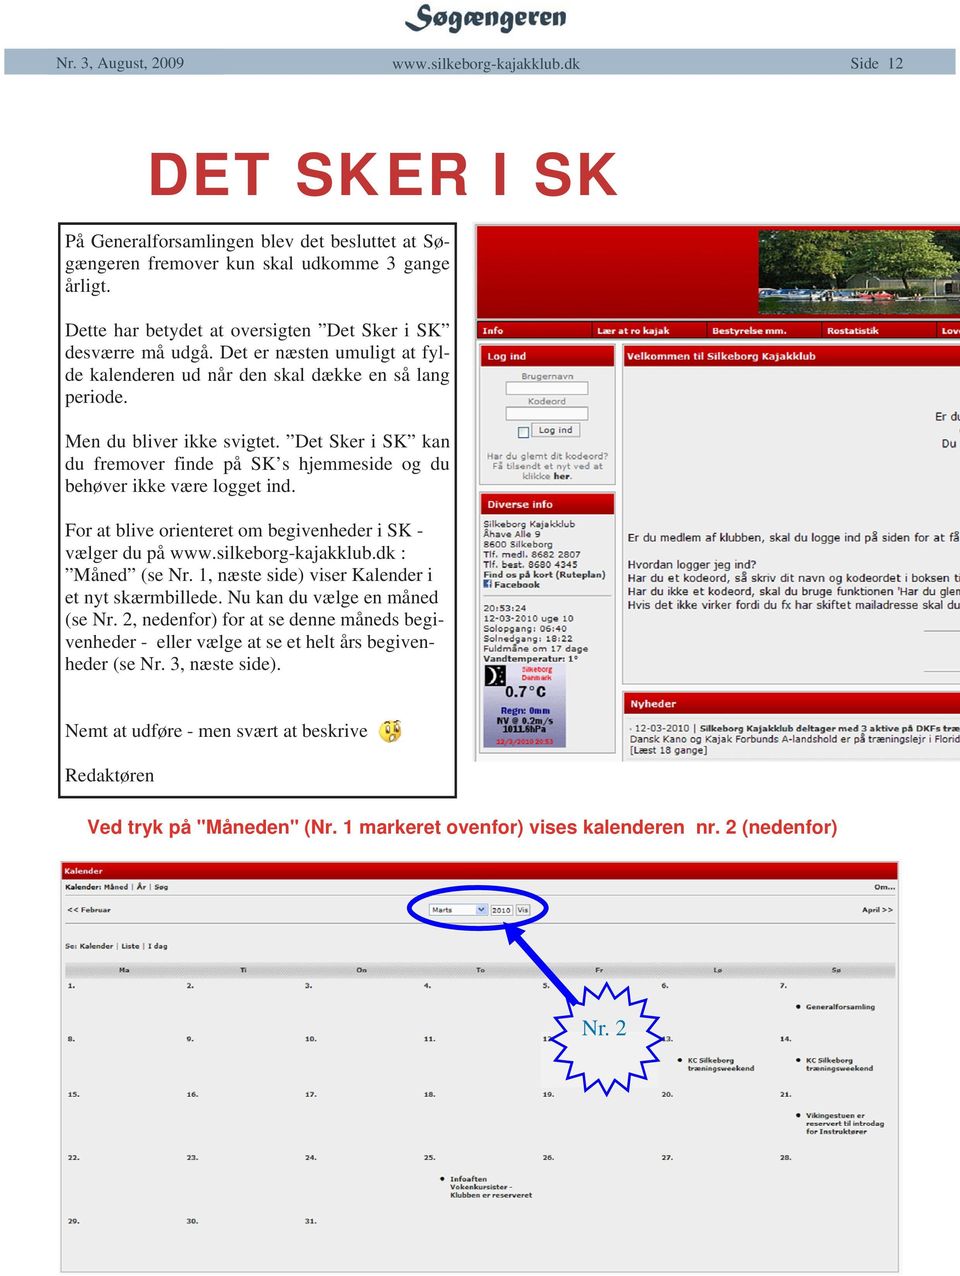 Det Sker i SK kan du fremover finde på SK s hjemmeside og du behøver ikke være logget ind. For at blive orienteret om begivenheder i SK vælger du på : Måned (se Nr.